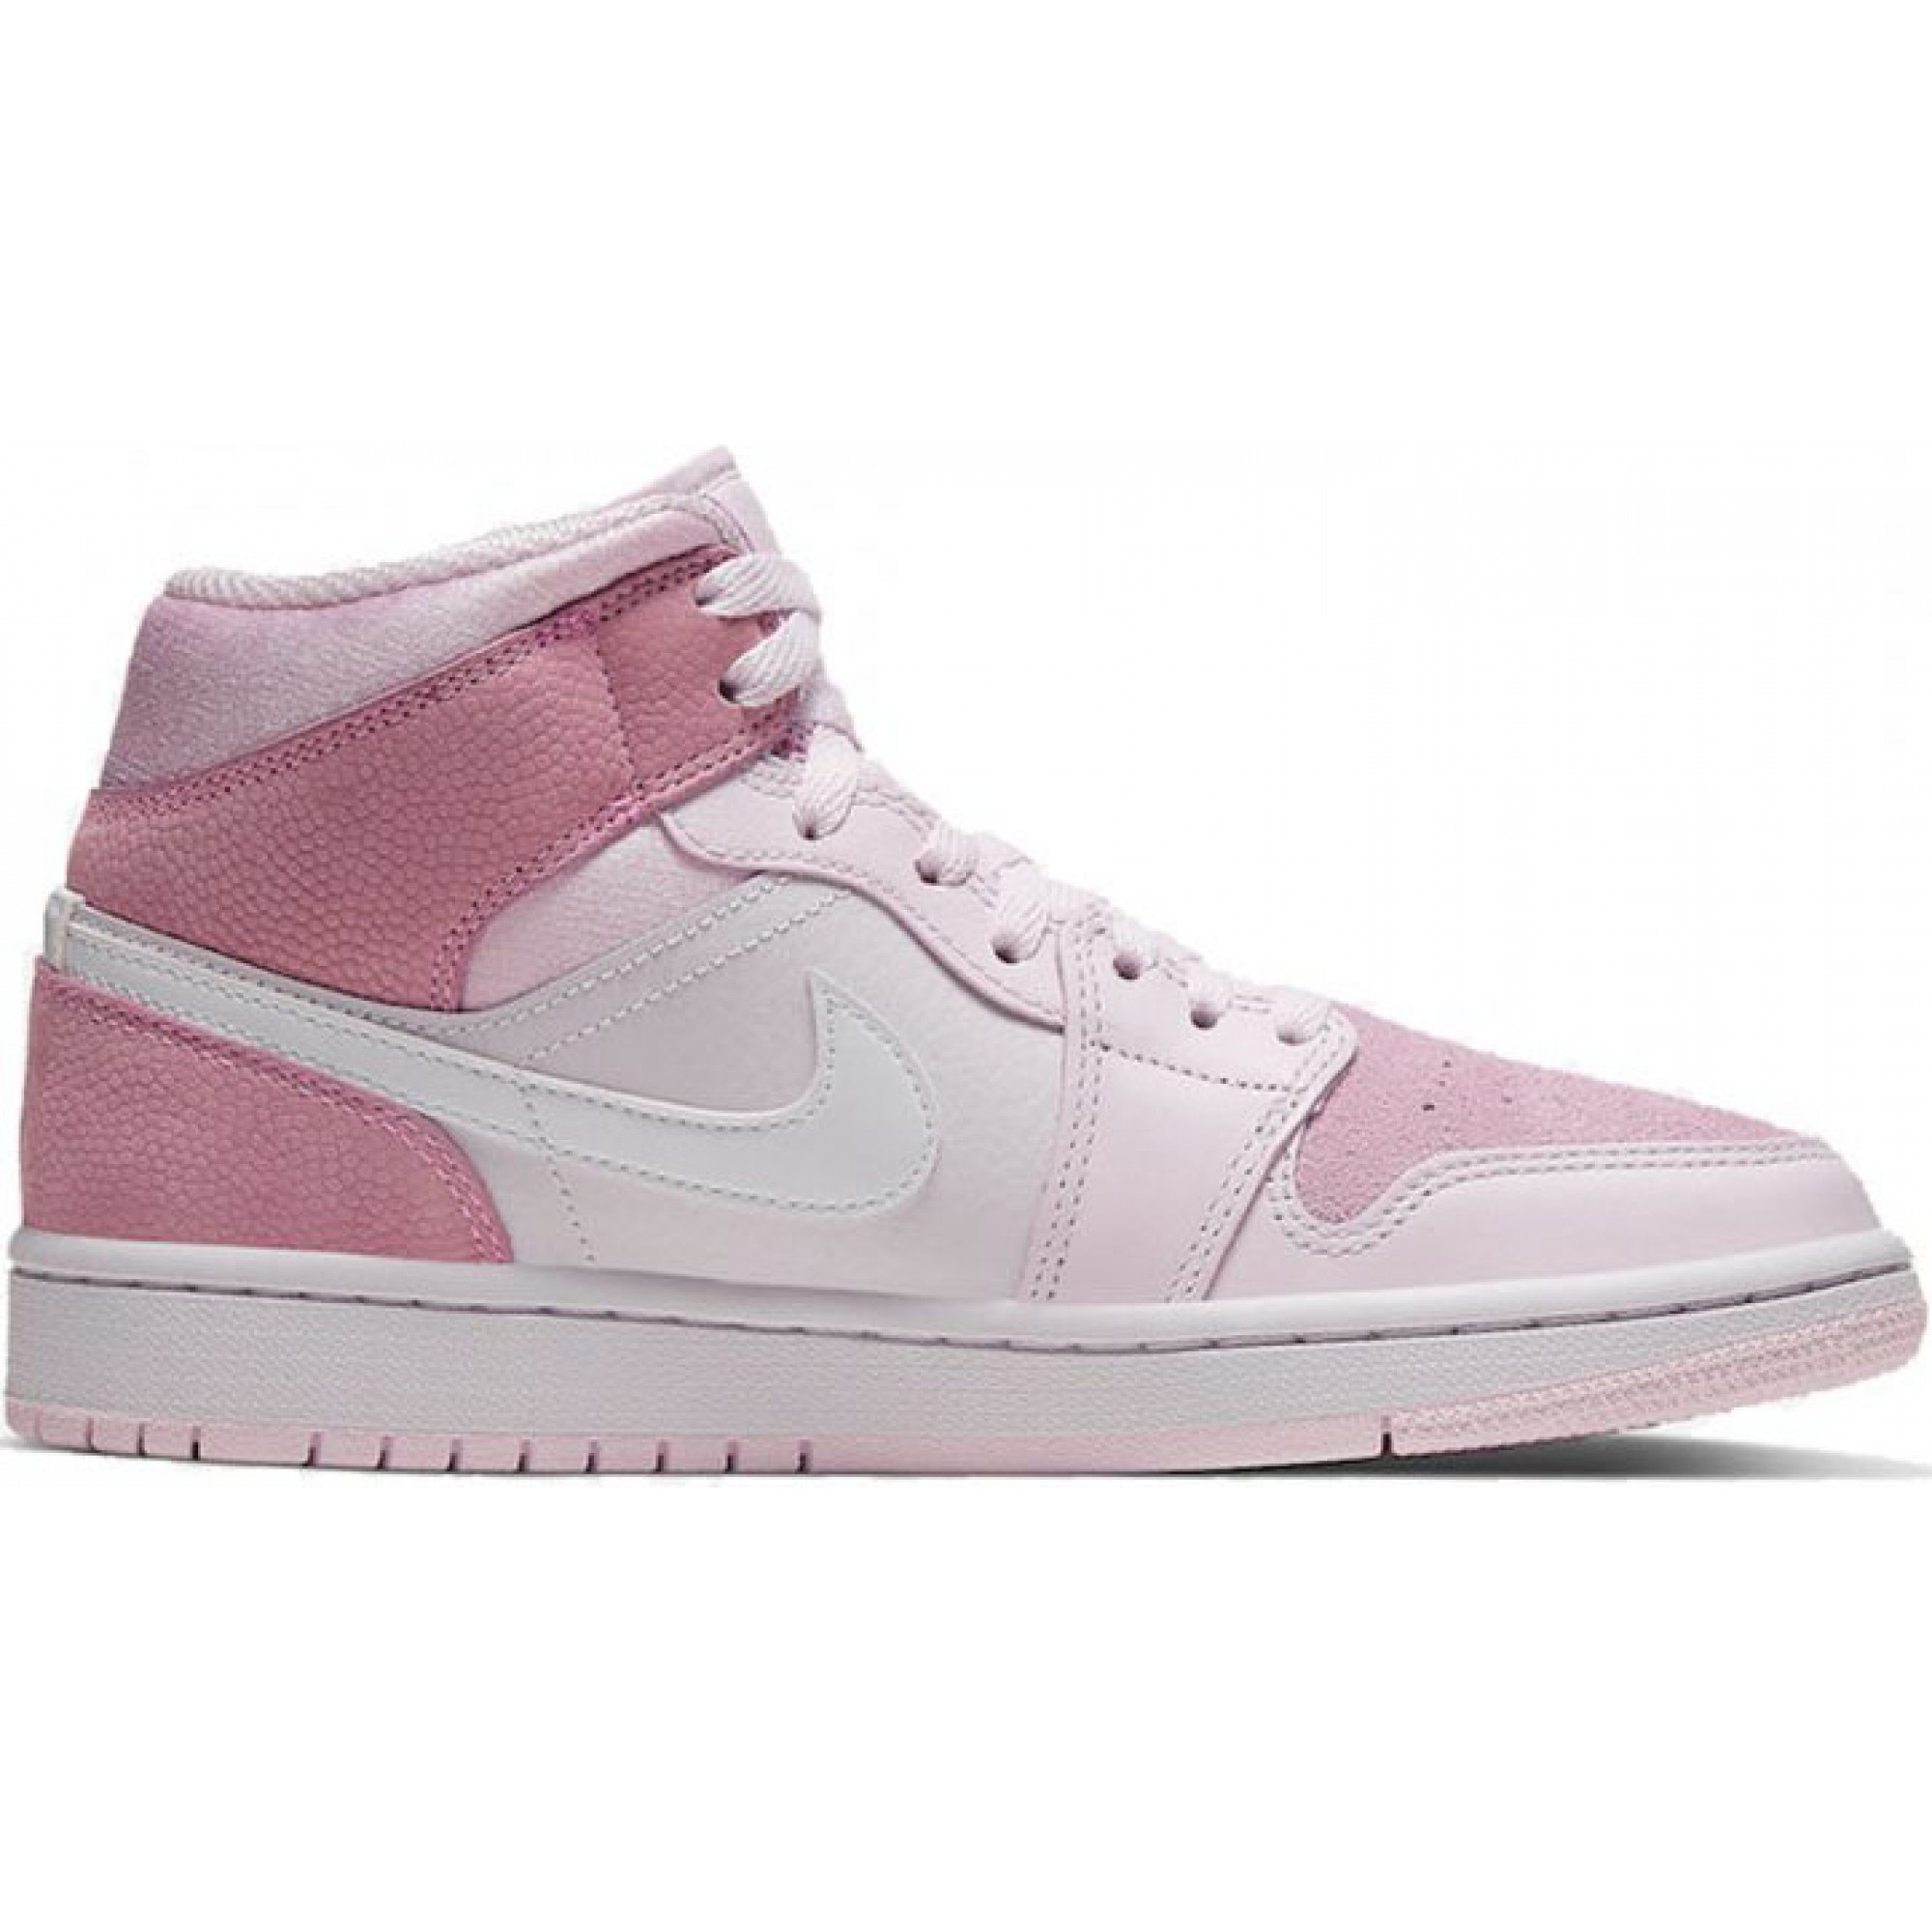 Nike Air Jordan 1 Retro pink 